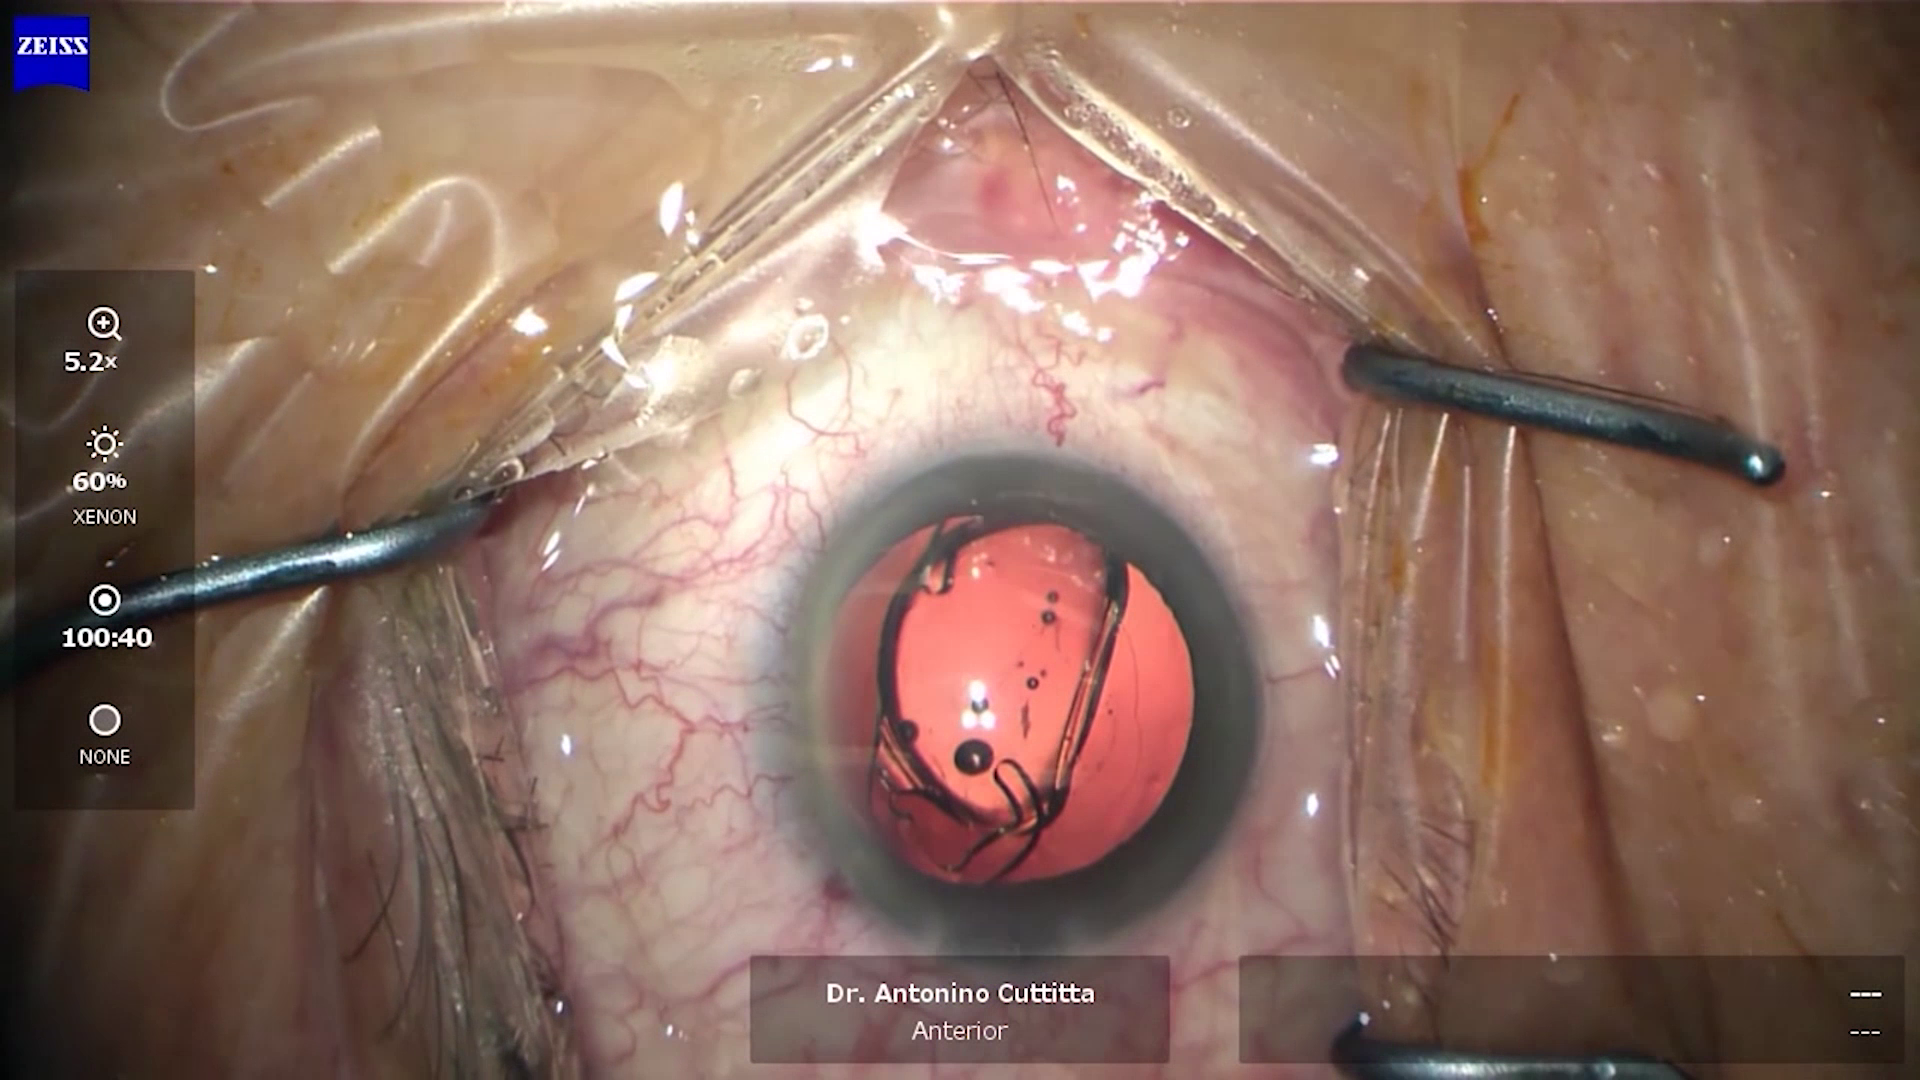 Poser le fondement de la réussite de la chirurgie de la cataracte grâce à une technologie de pointe – partie 3